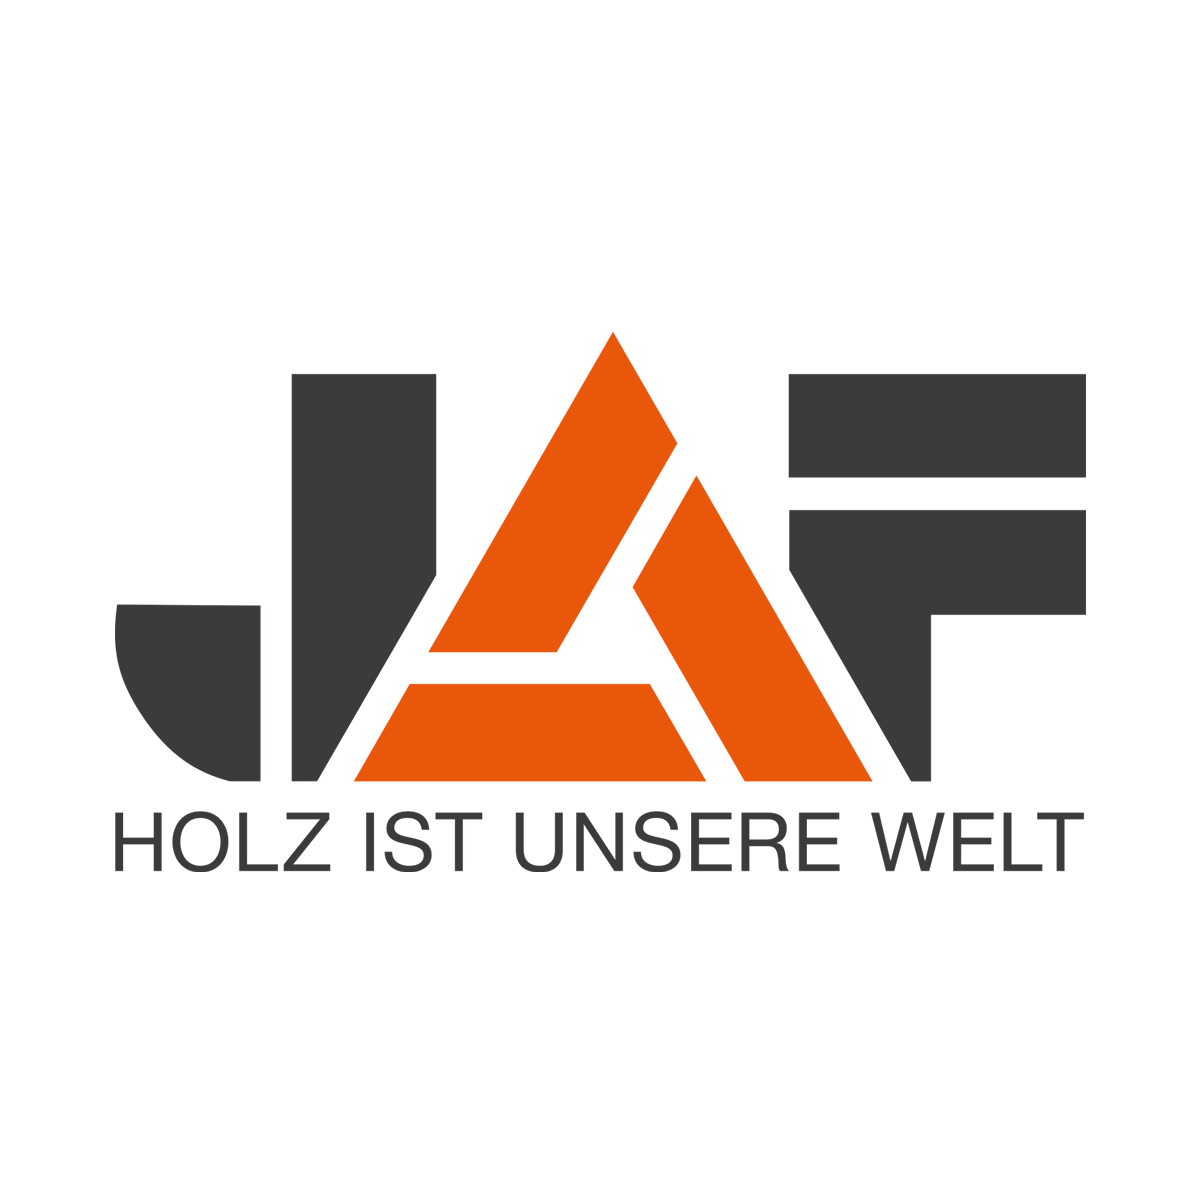 Logo eines Partners des Mitteldeutschen Innenausbautags